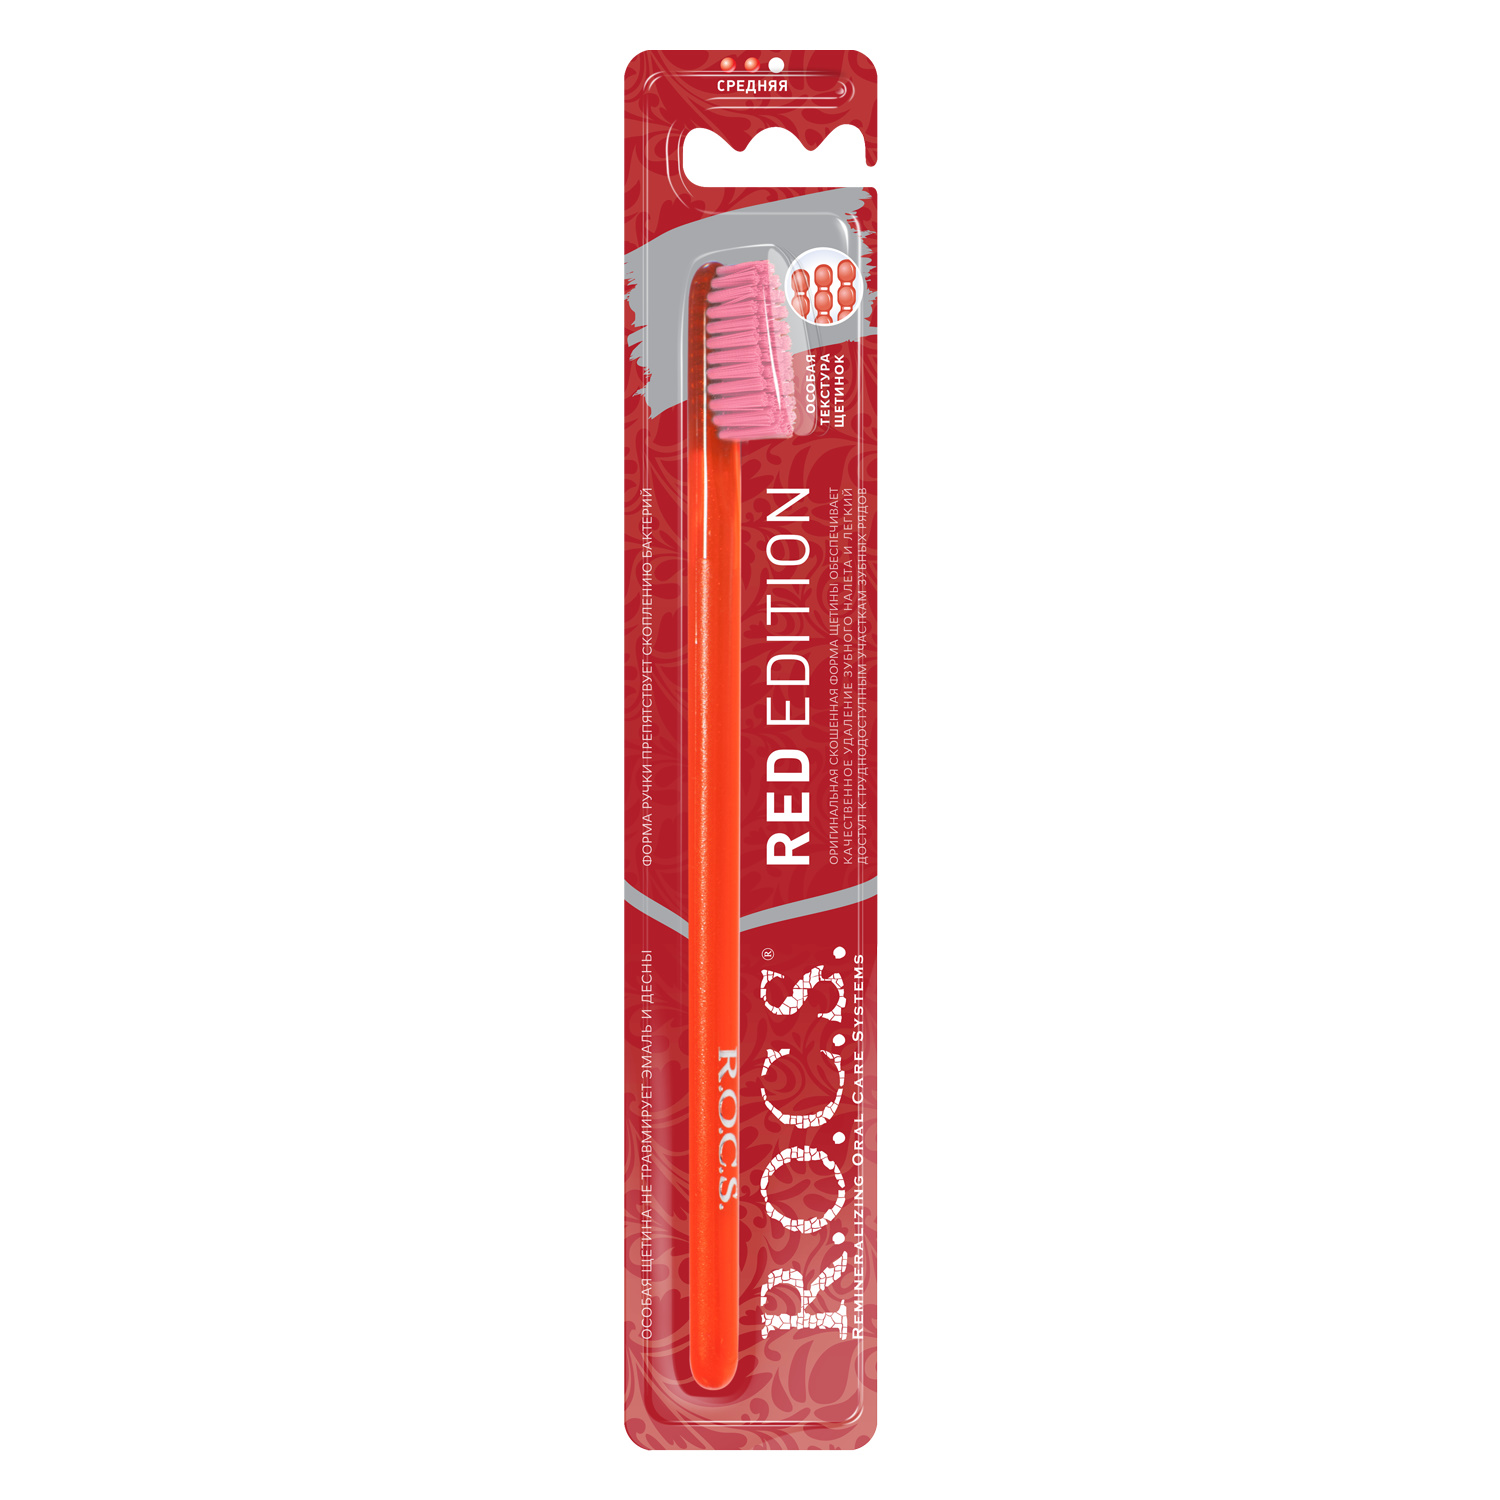 Зубная щетка R.O.C.S. Red Edition Classic цвет красно-розовый зубная щетка r o c s edition classic средняя в ассортименте